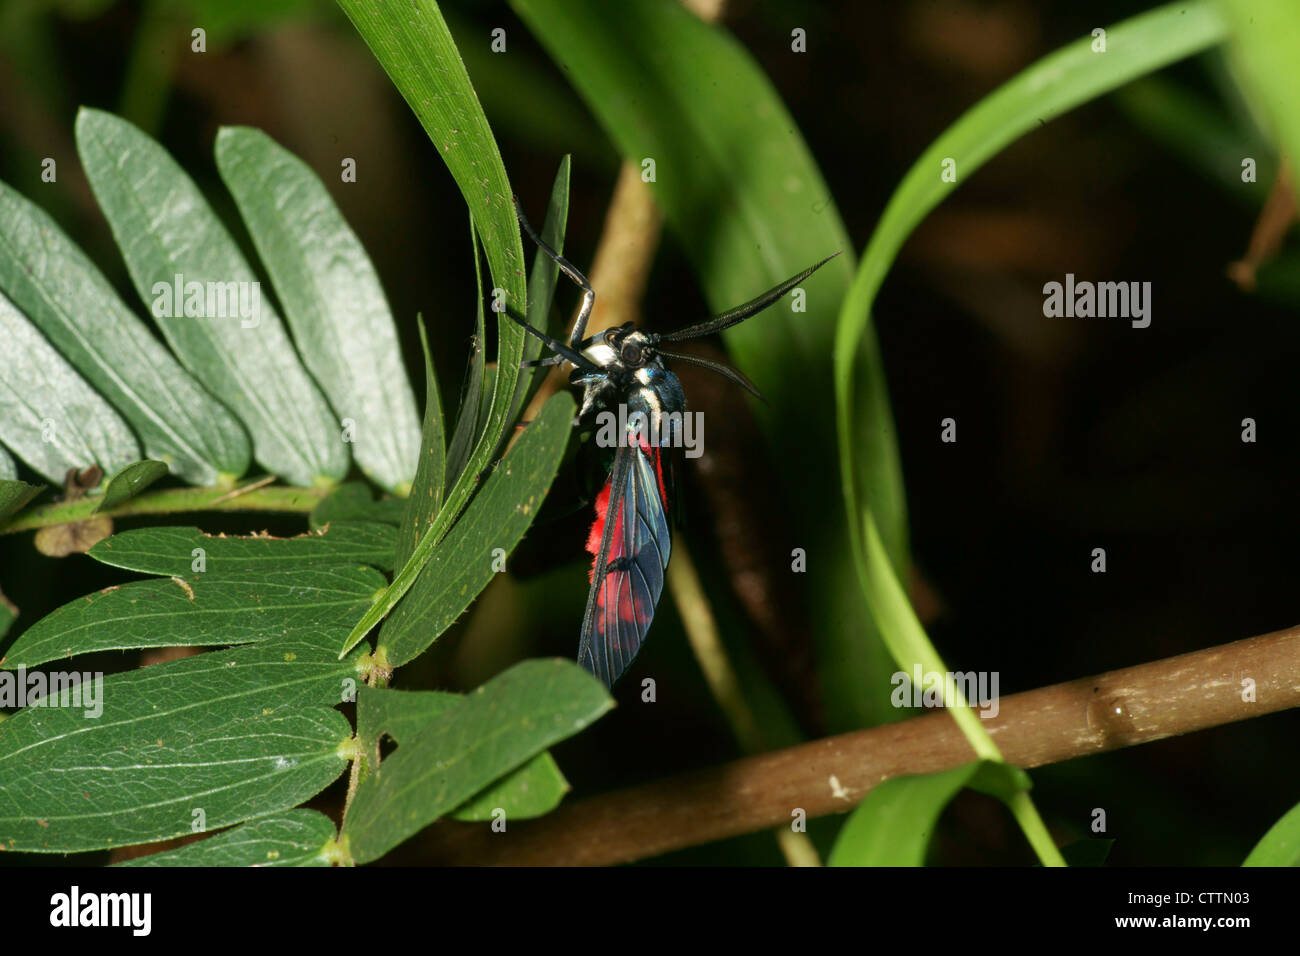 Cosmosoma Wasp Moth on leaf Stock Photo